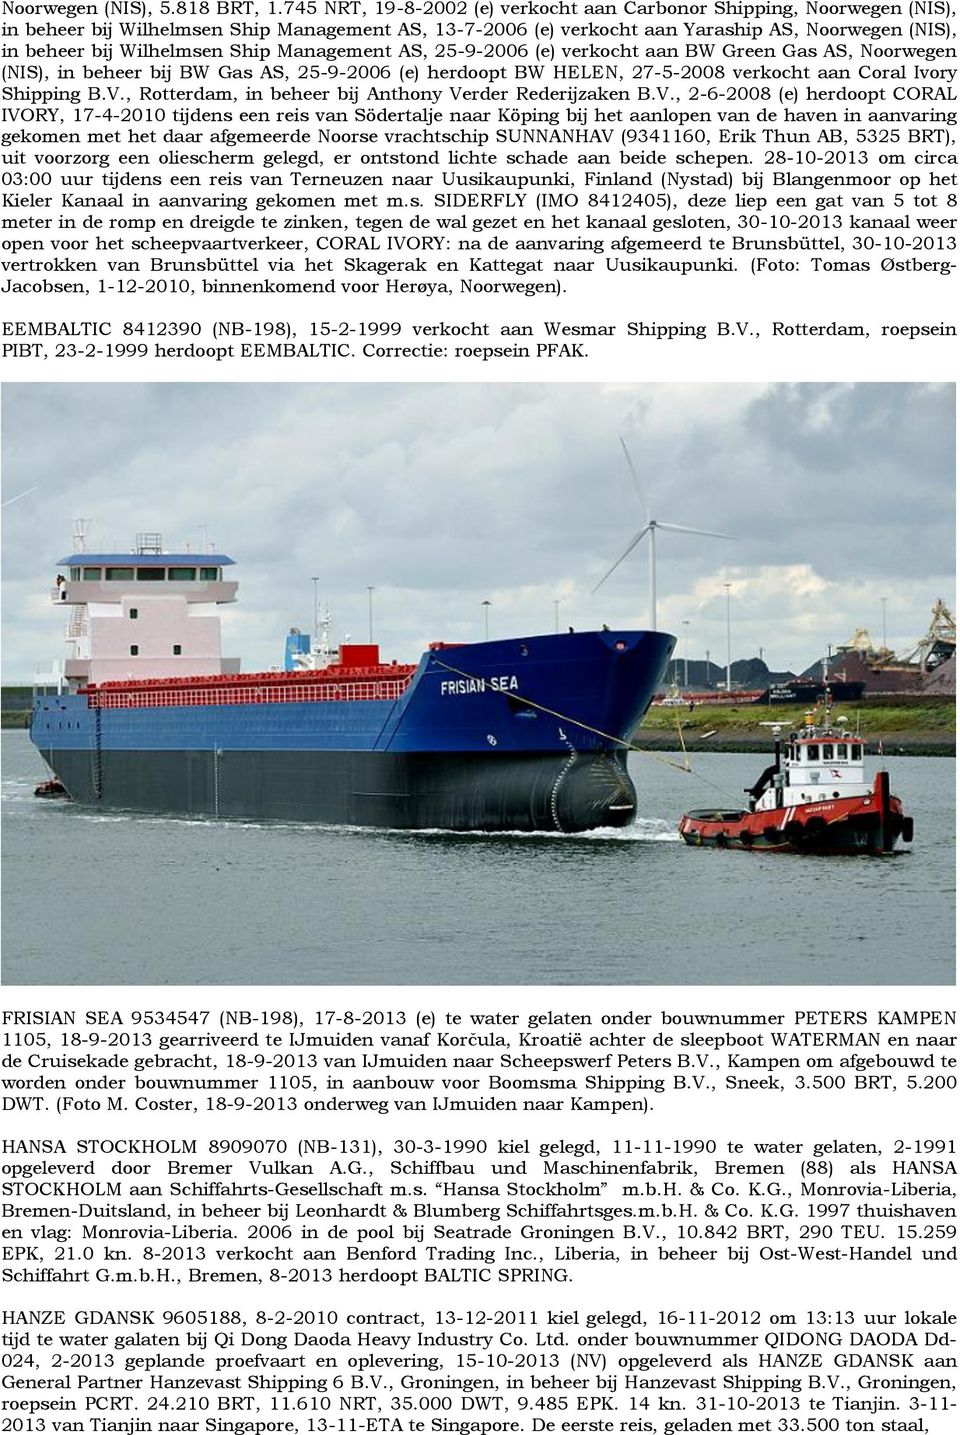 Ship Management AS, 25-9-2006 (e) verkocht aan BW Green Gas AS, Noorwegen (NIS), in beheer bij BW Gas AS, 25-9-2006 (e) herdoopt BW HELEN, 27-5-2008 verkocht aan Coral Ivory Shipping B.V.